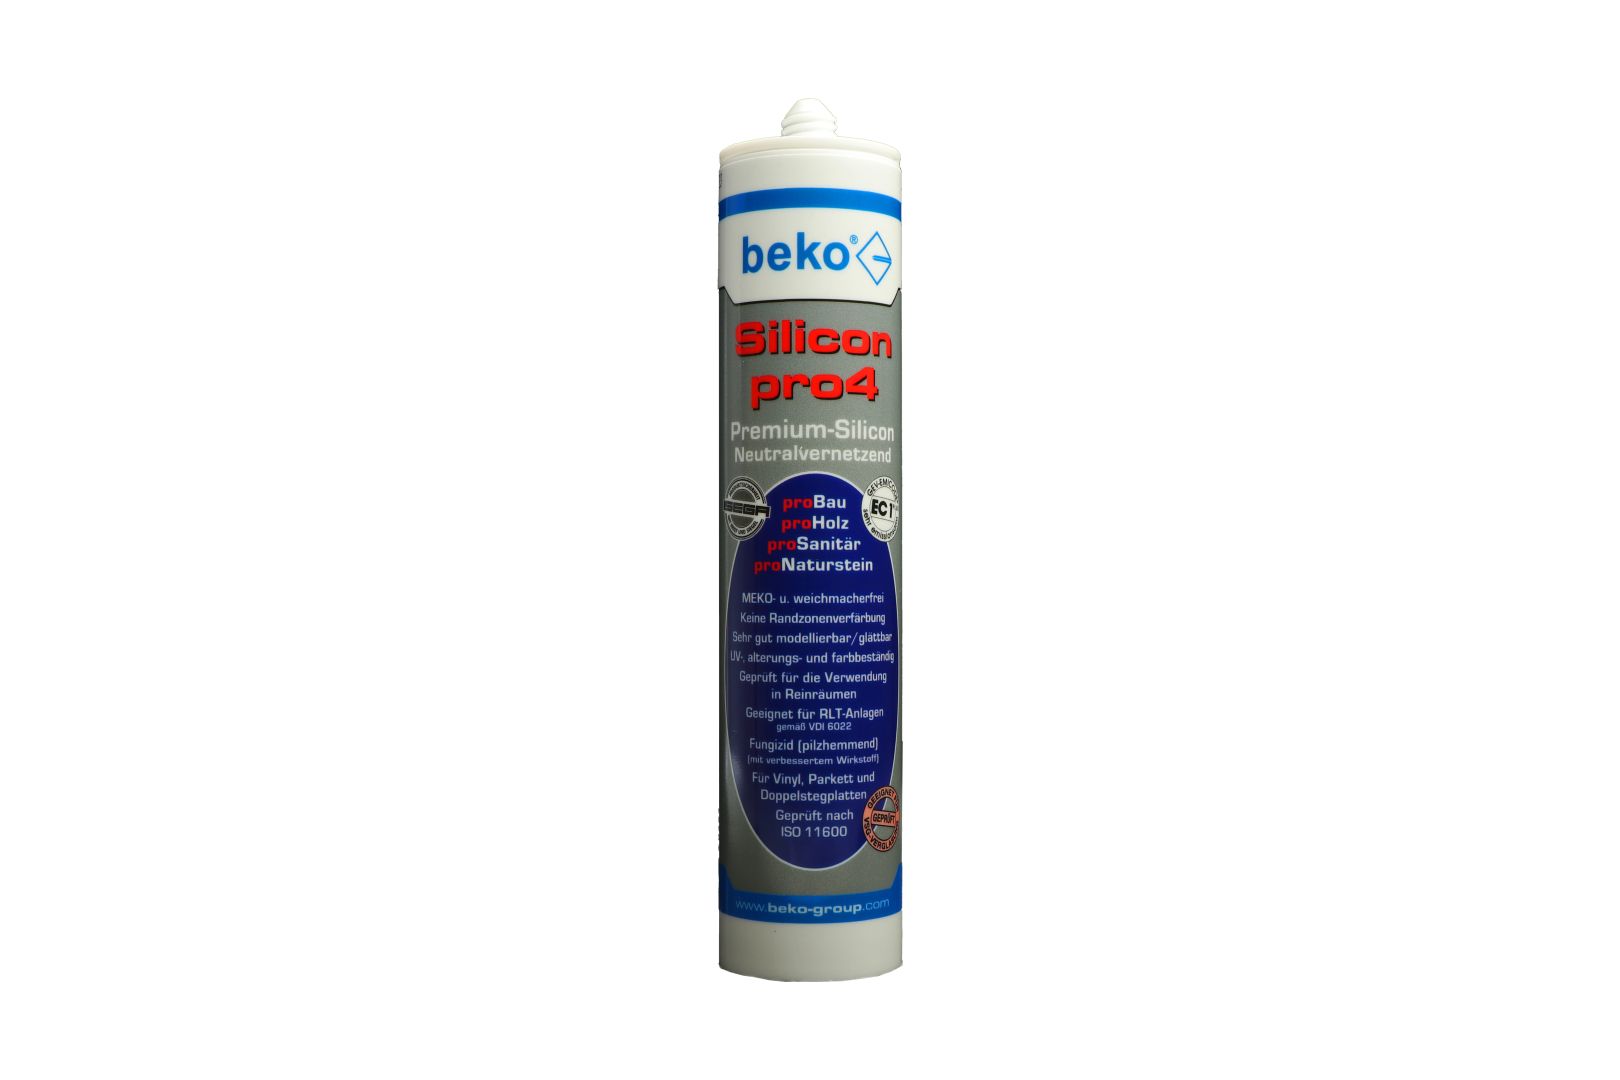 beko Silicon pro4, Premium-Silicon, Silikon-Dichtstoff, neutralvernetzend, bahamabeige/eiche-hell, 310 ml